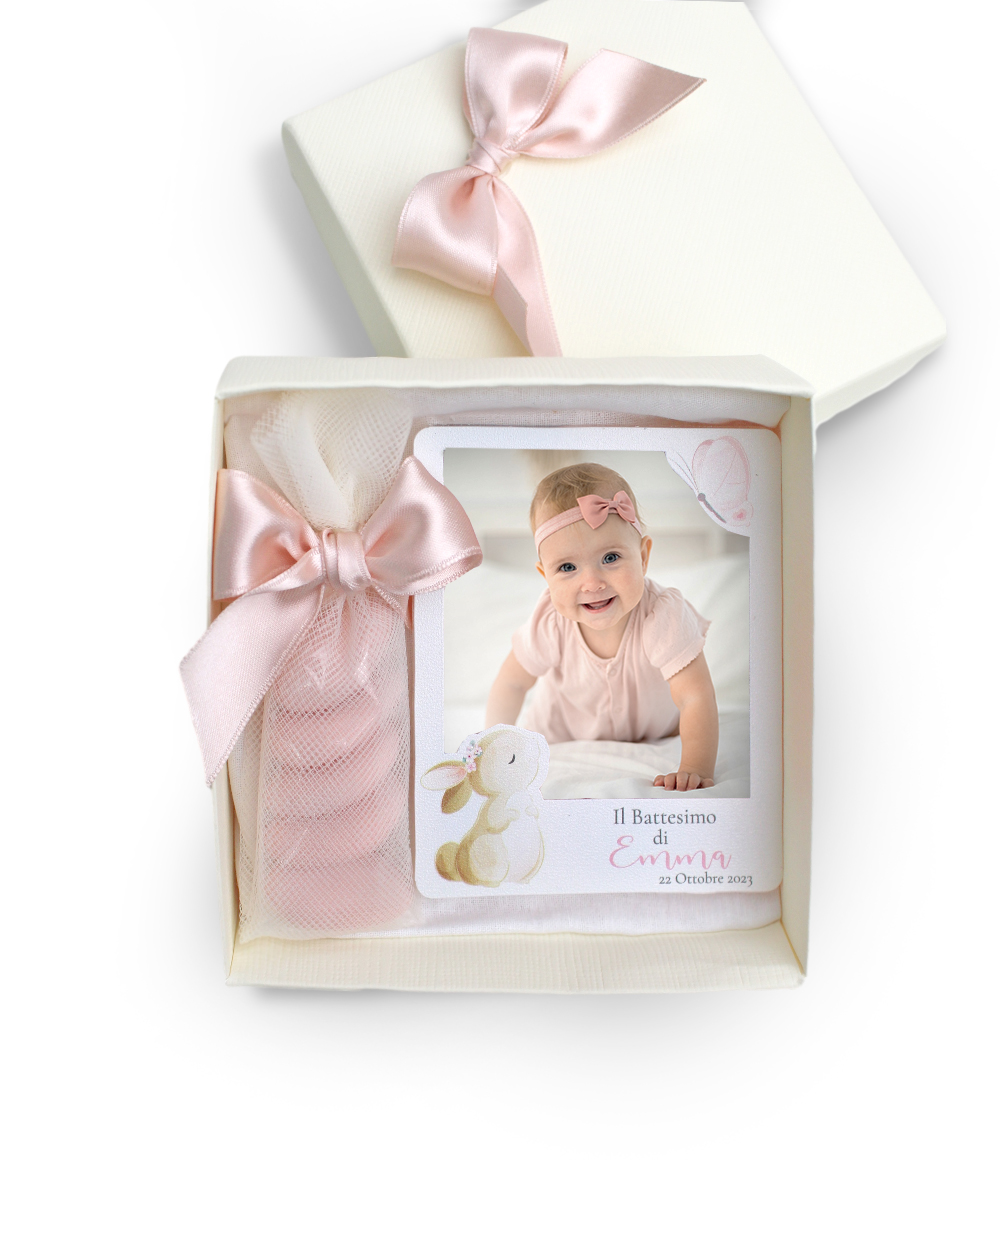 Calamita in Stile Polaroid Personalizzata con Nome, Data e Evento - Idea  Bomboniera per Battesimo, Nascita Bambina